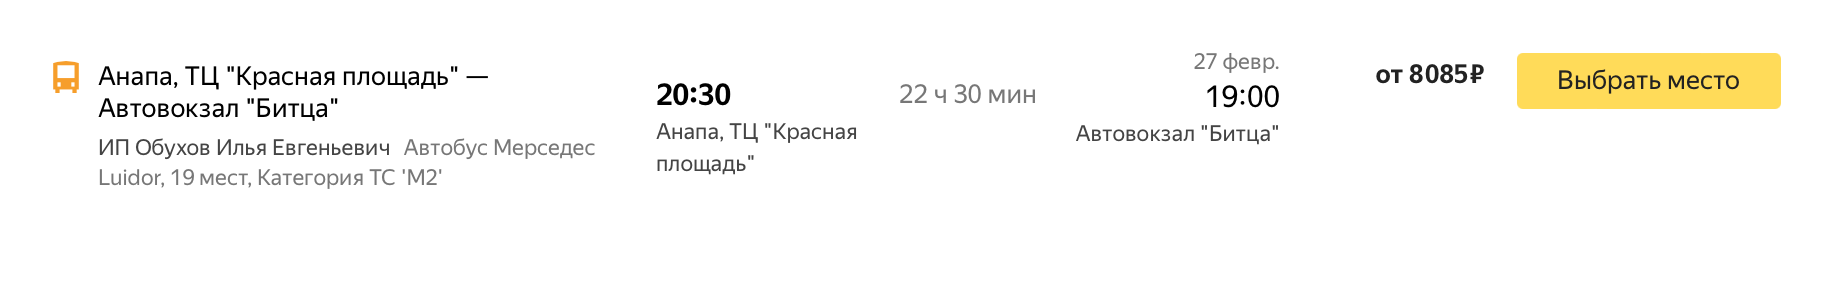 Билеты на автобус из Анапы в Москву на 26 февраля — дороже, от 8085 ₽